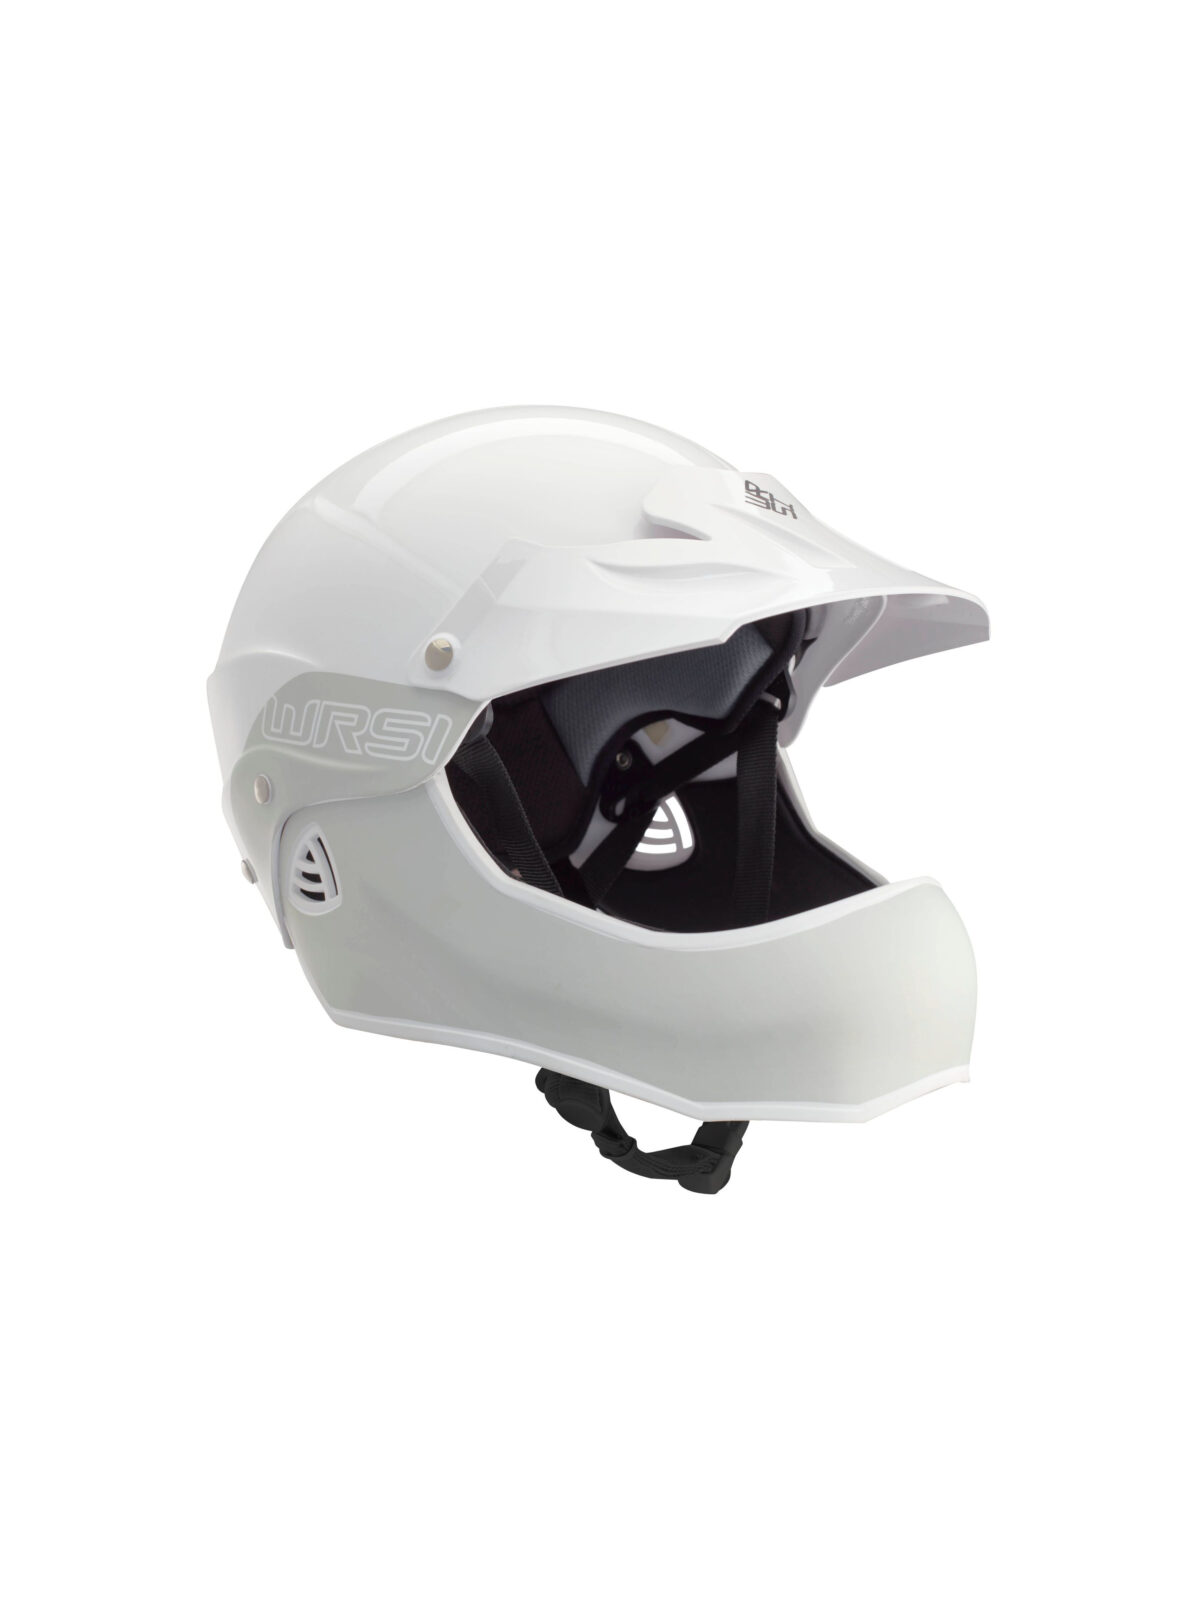 Moment Full Face Whitewater Helmet Ghost WRSI NRS